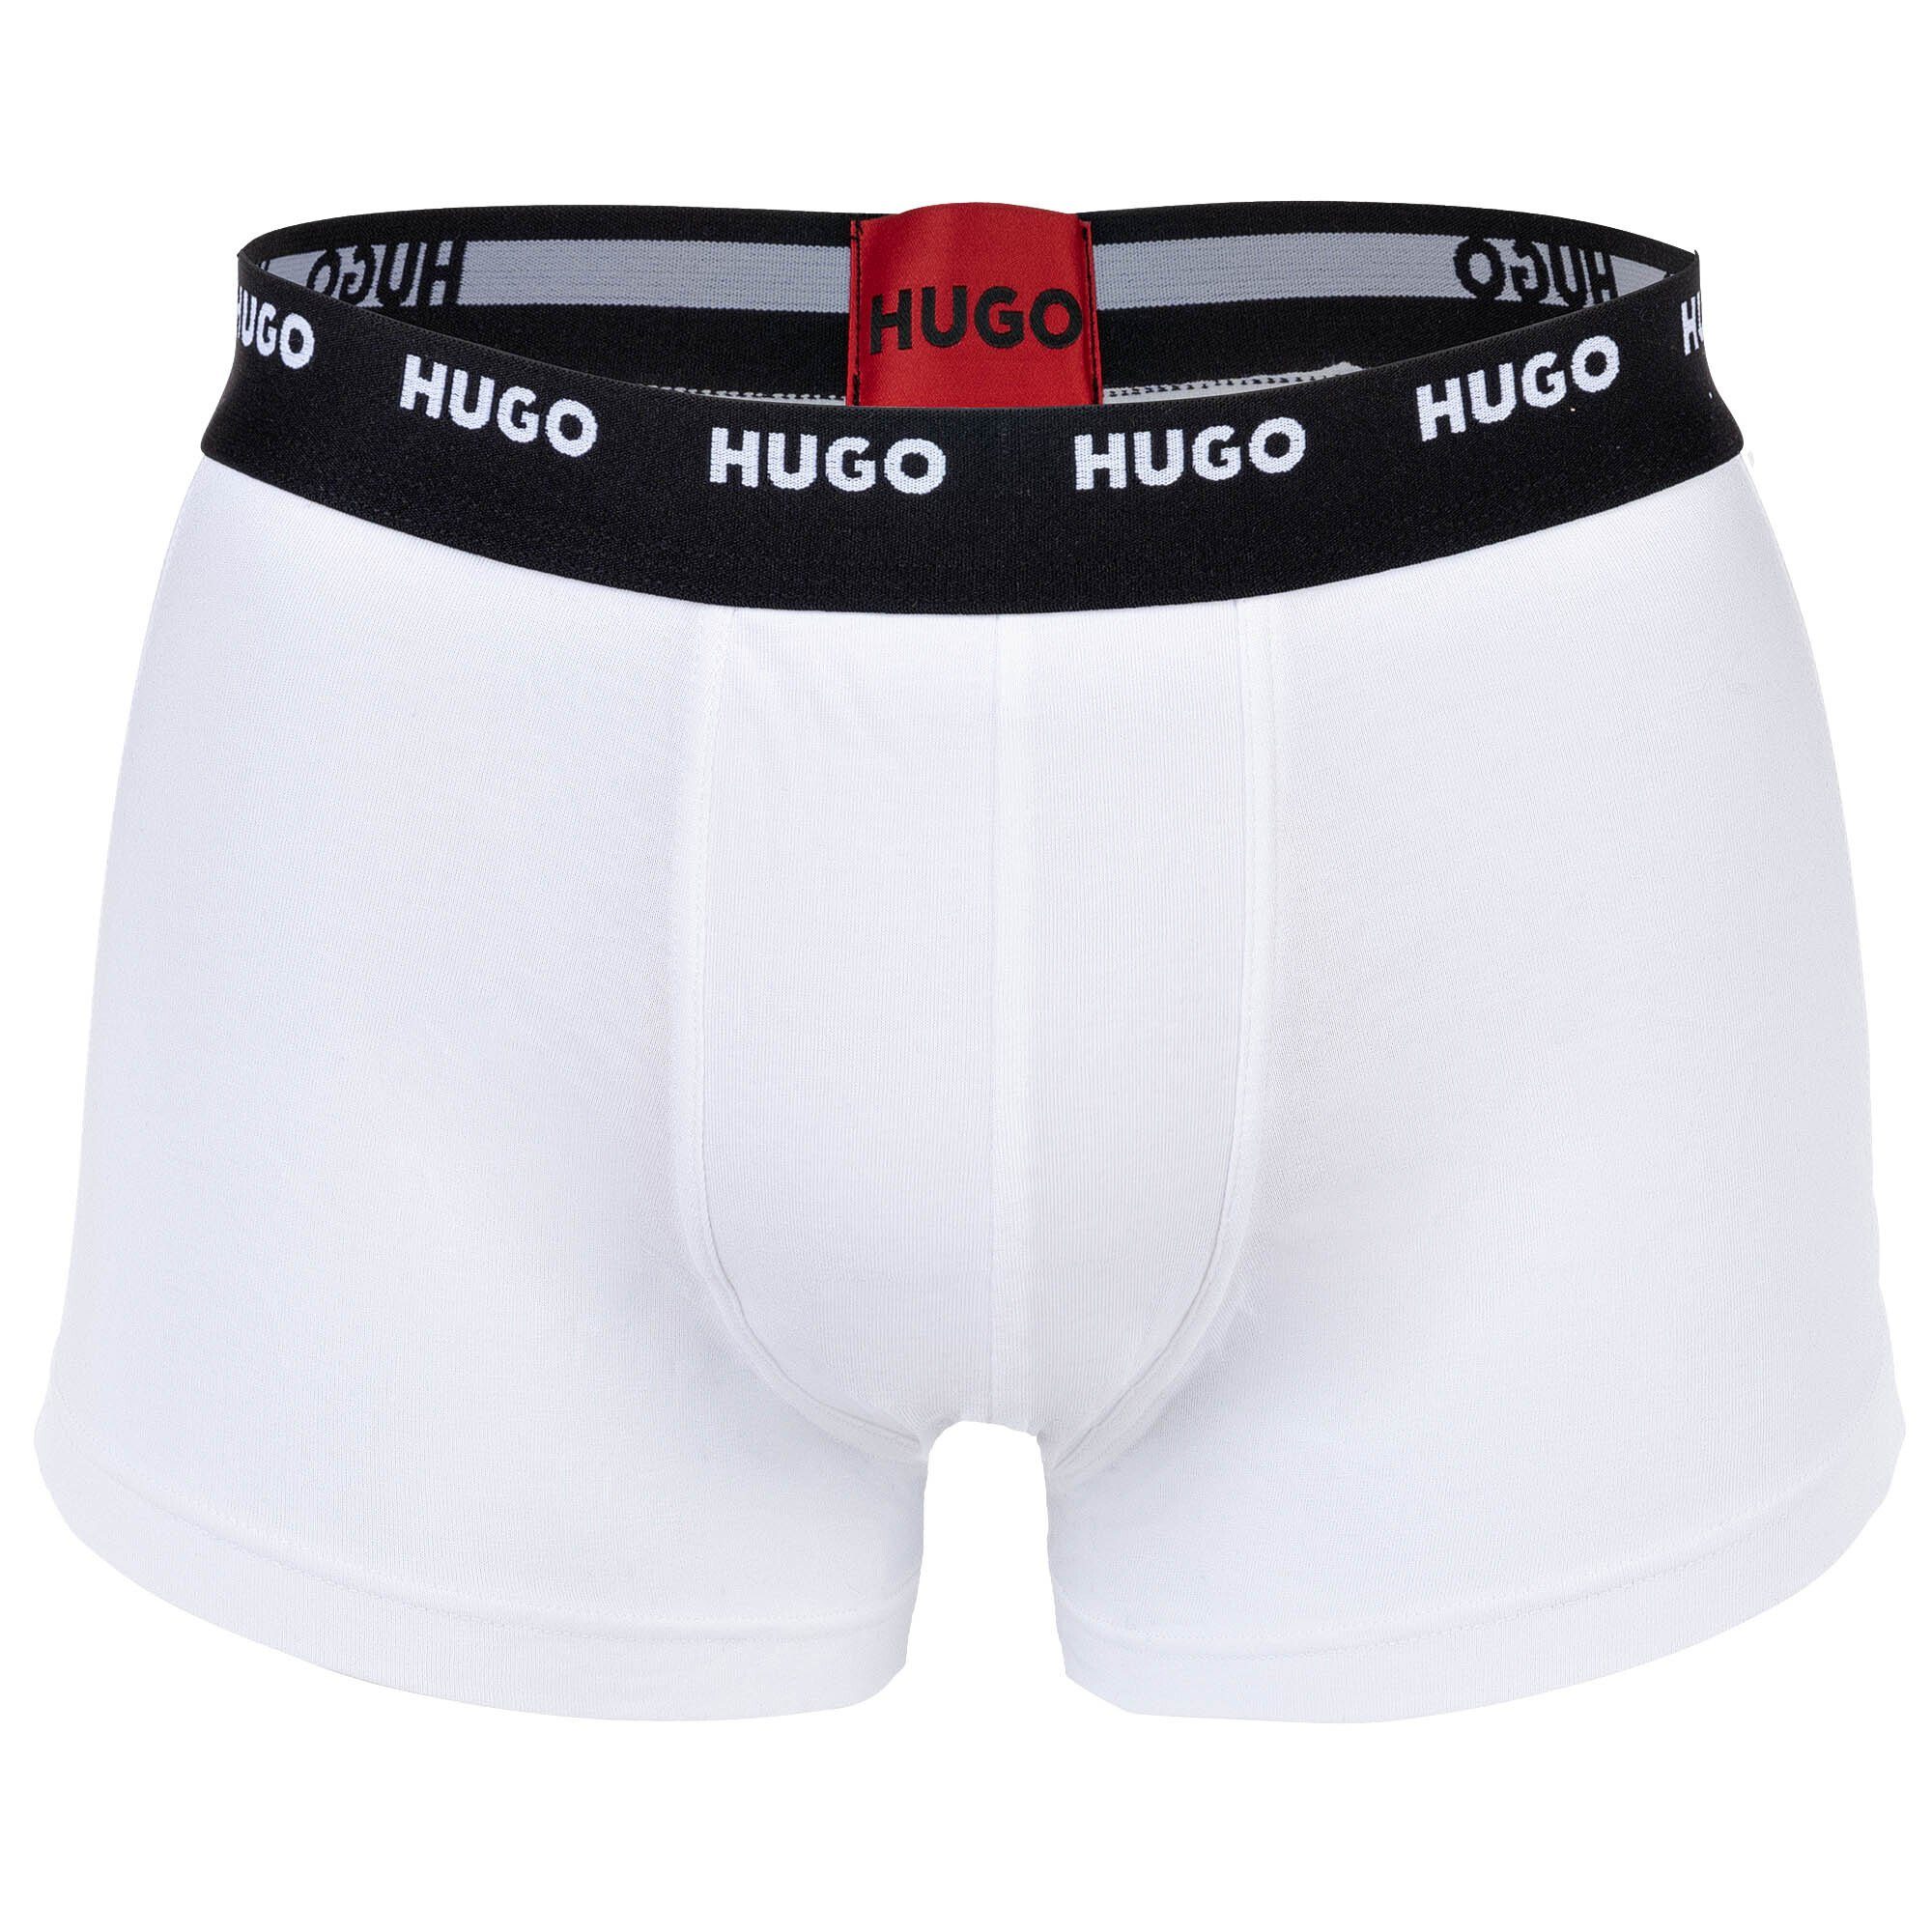 Shorts, 5er Pack Pack Schwarz/Rot/Weiß Herren - Boxer Boxer HUGO Trunks Five